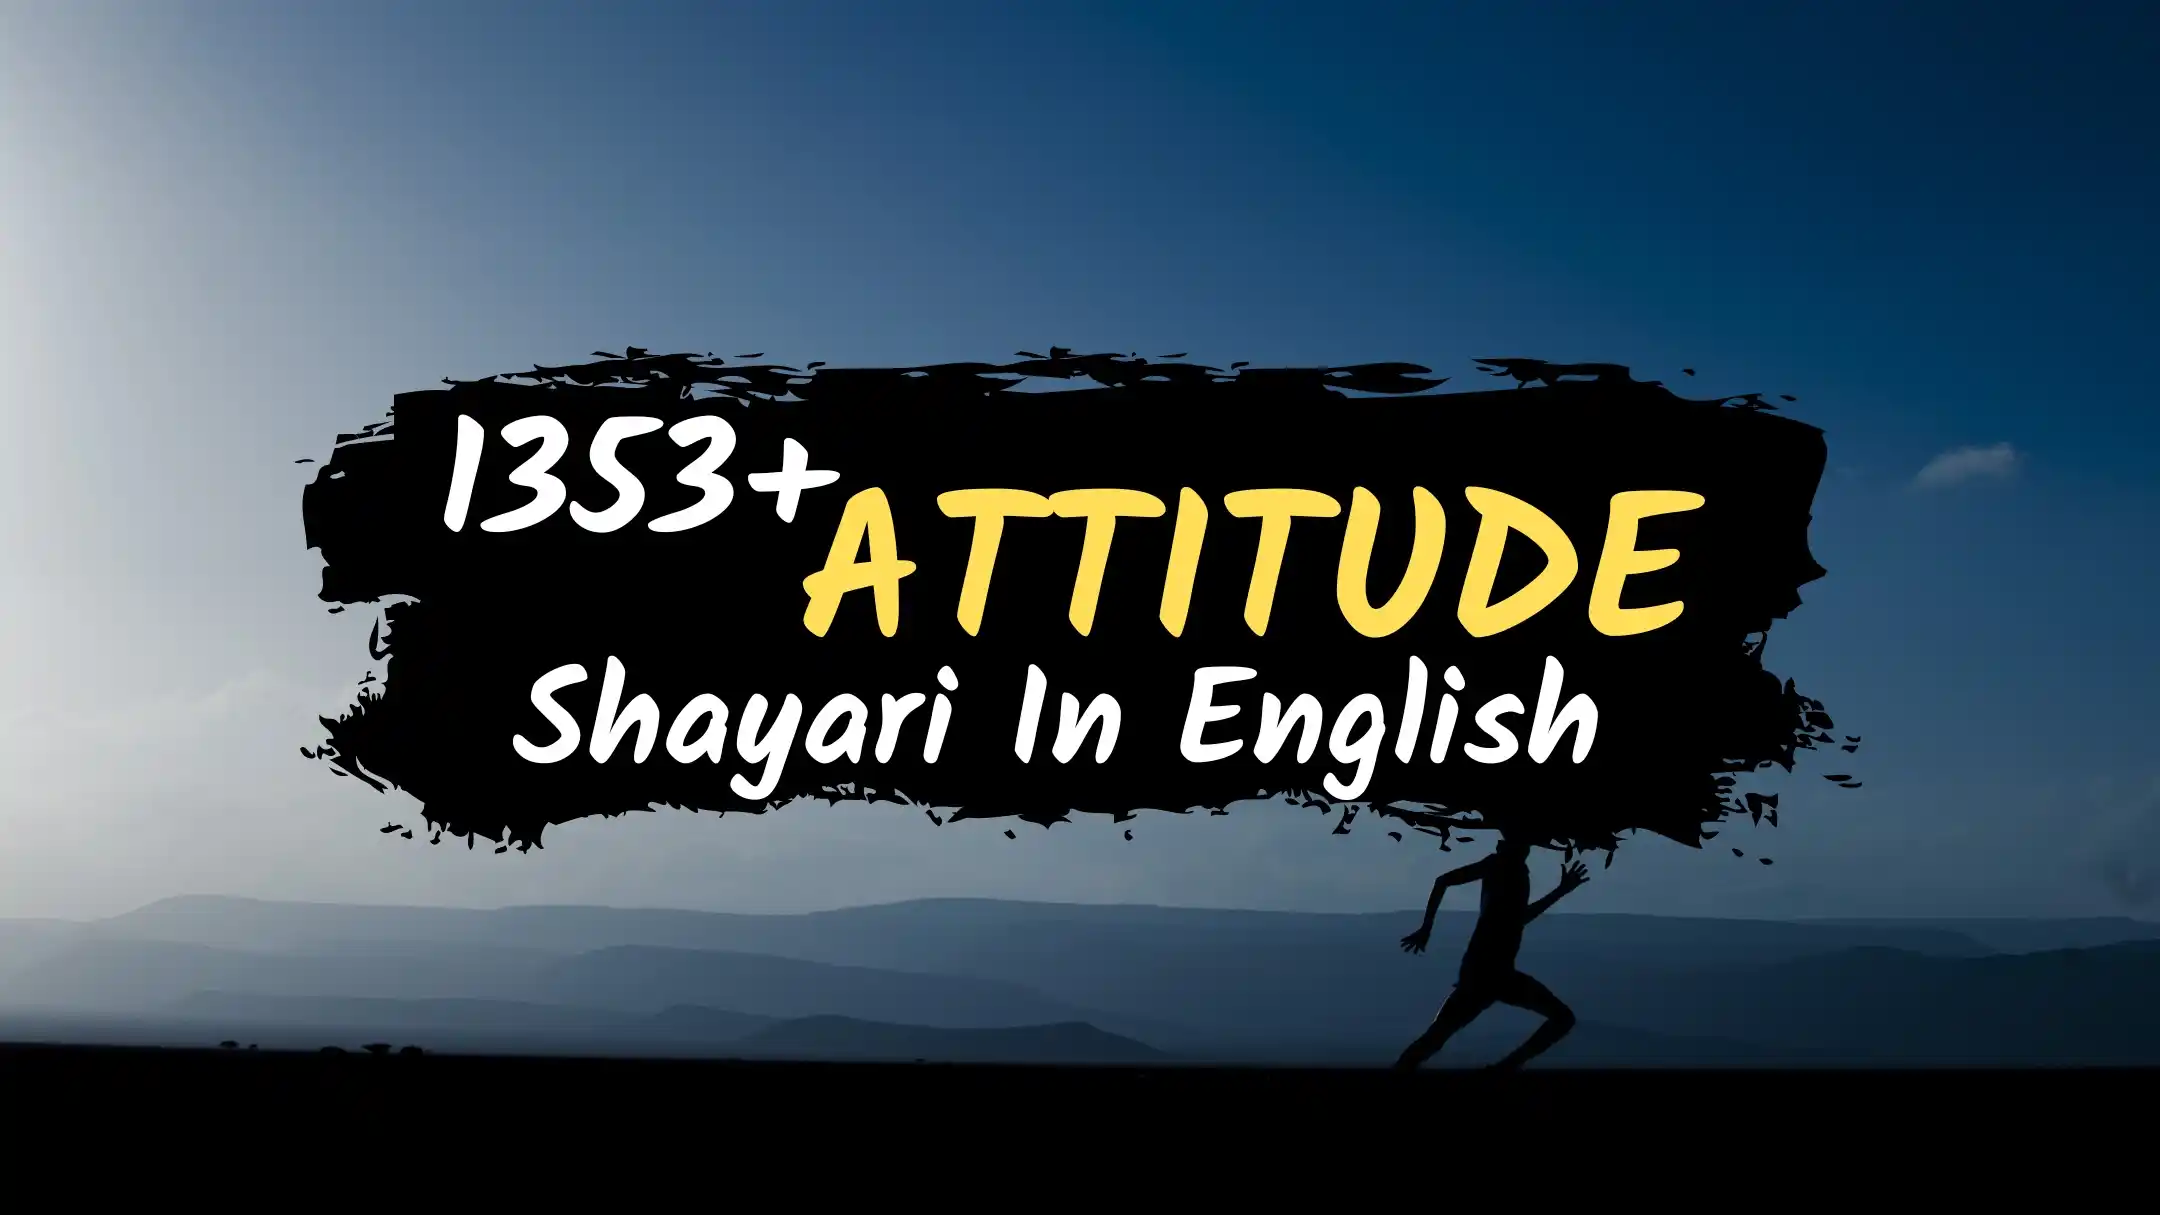 1353+ Attitude Shayari English – Attitude Status